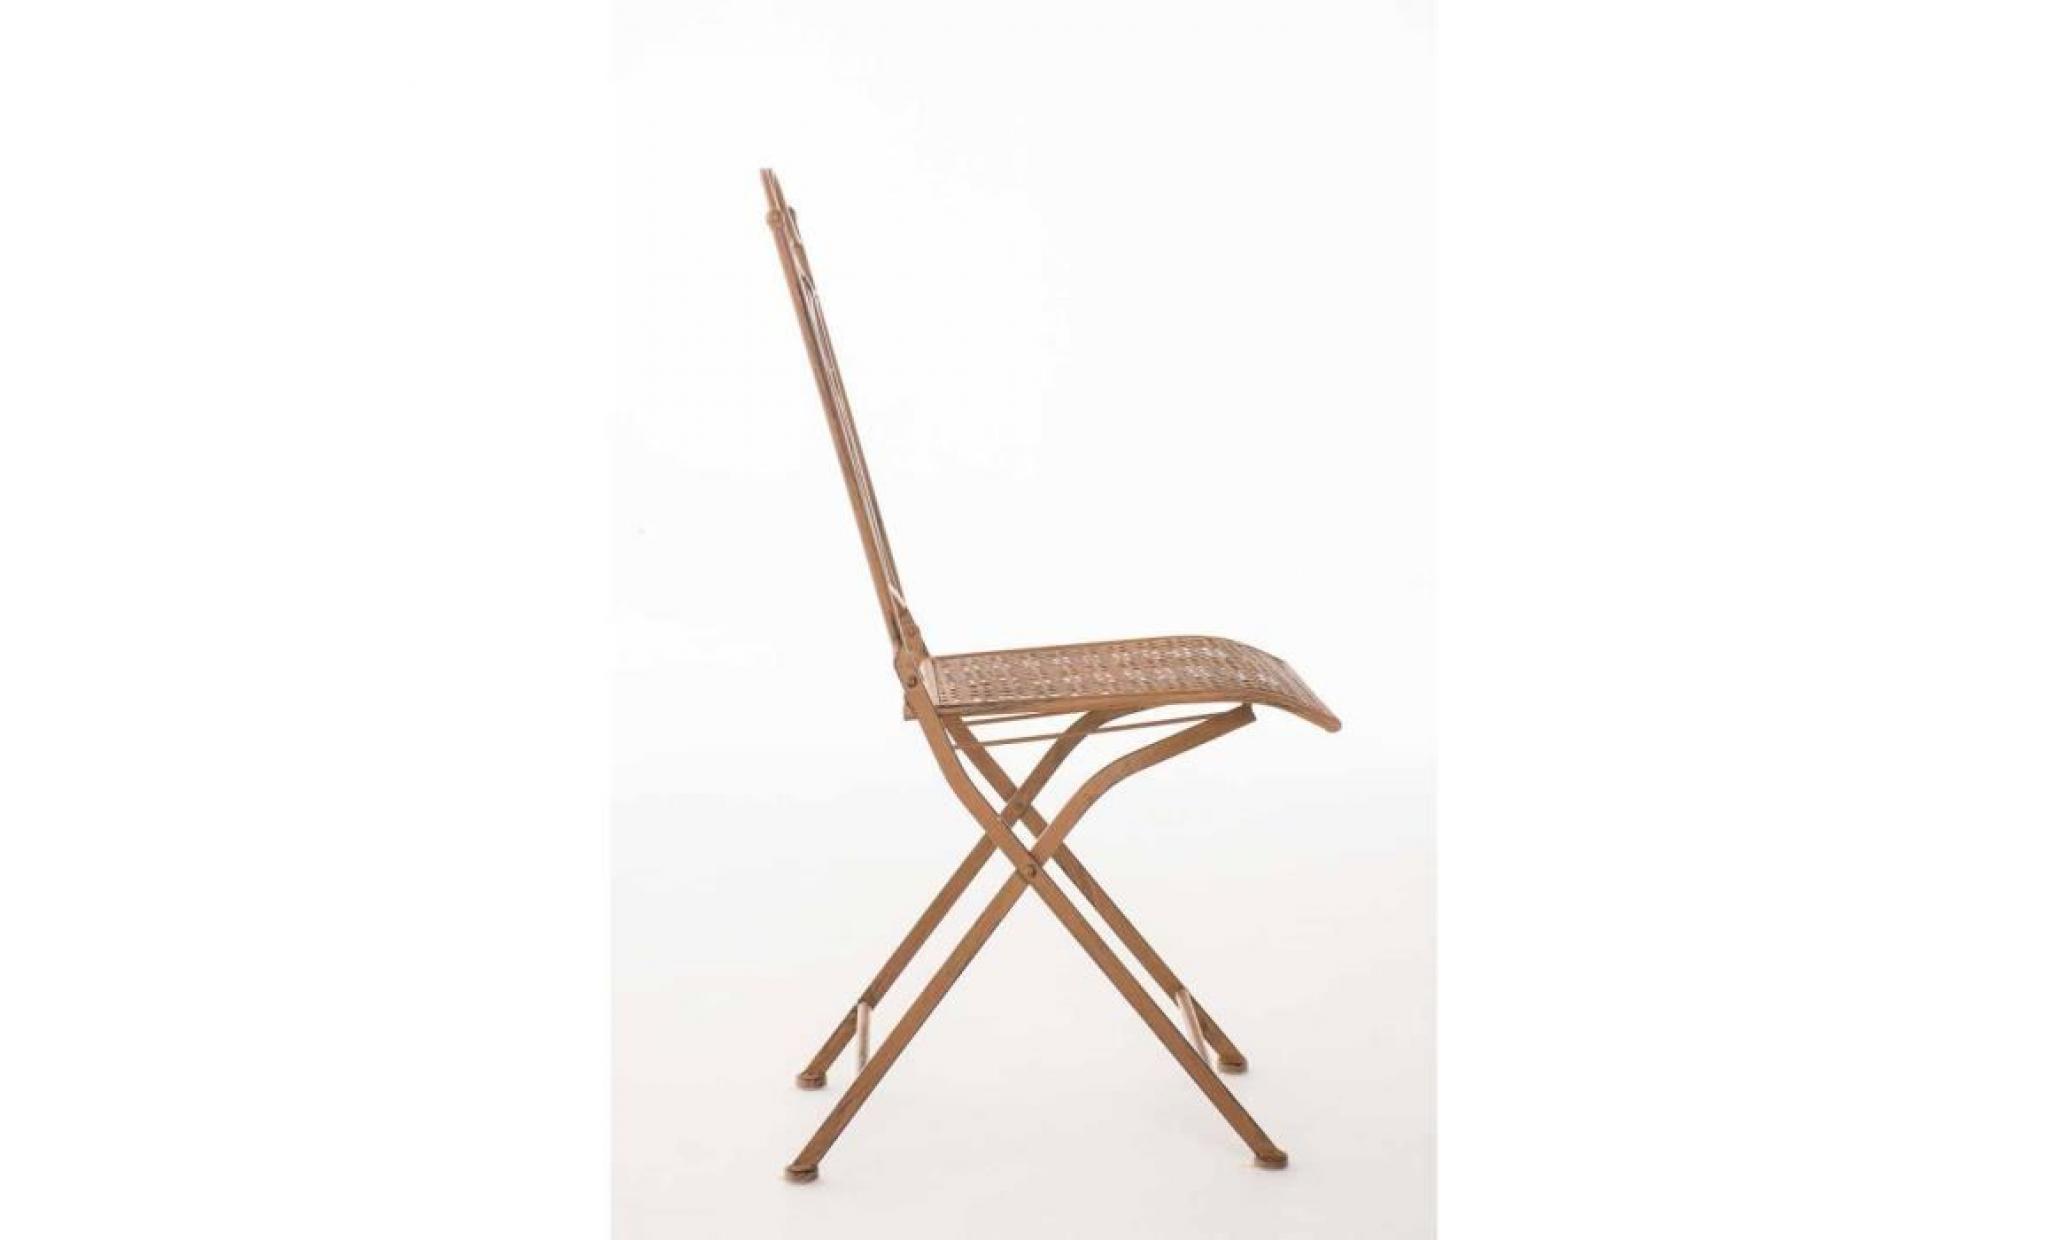 clp chaise nostalgique pliable lunis, chaise fer forgé, chaise pliante, chaise antique, 6 couleurs au choix 91 cm marron antique pas cher